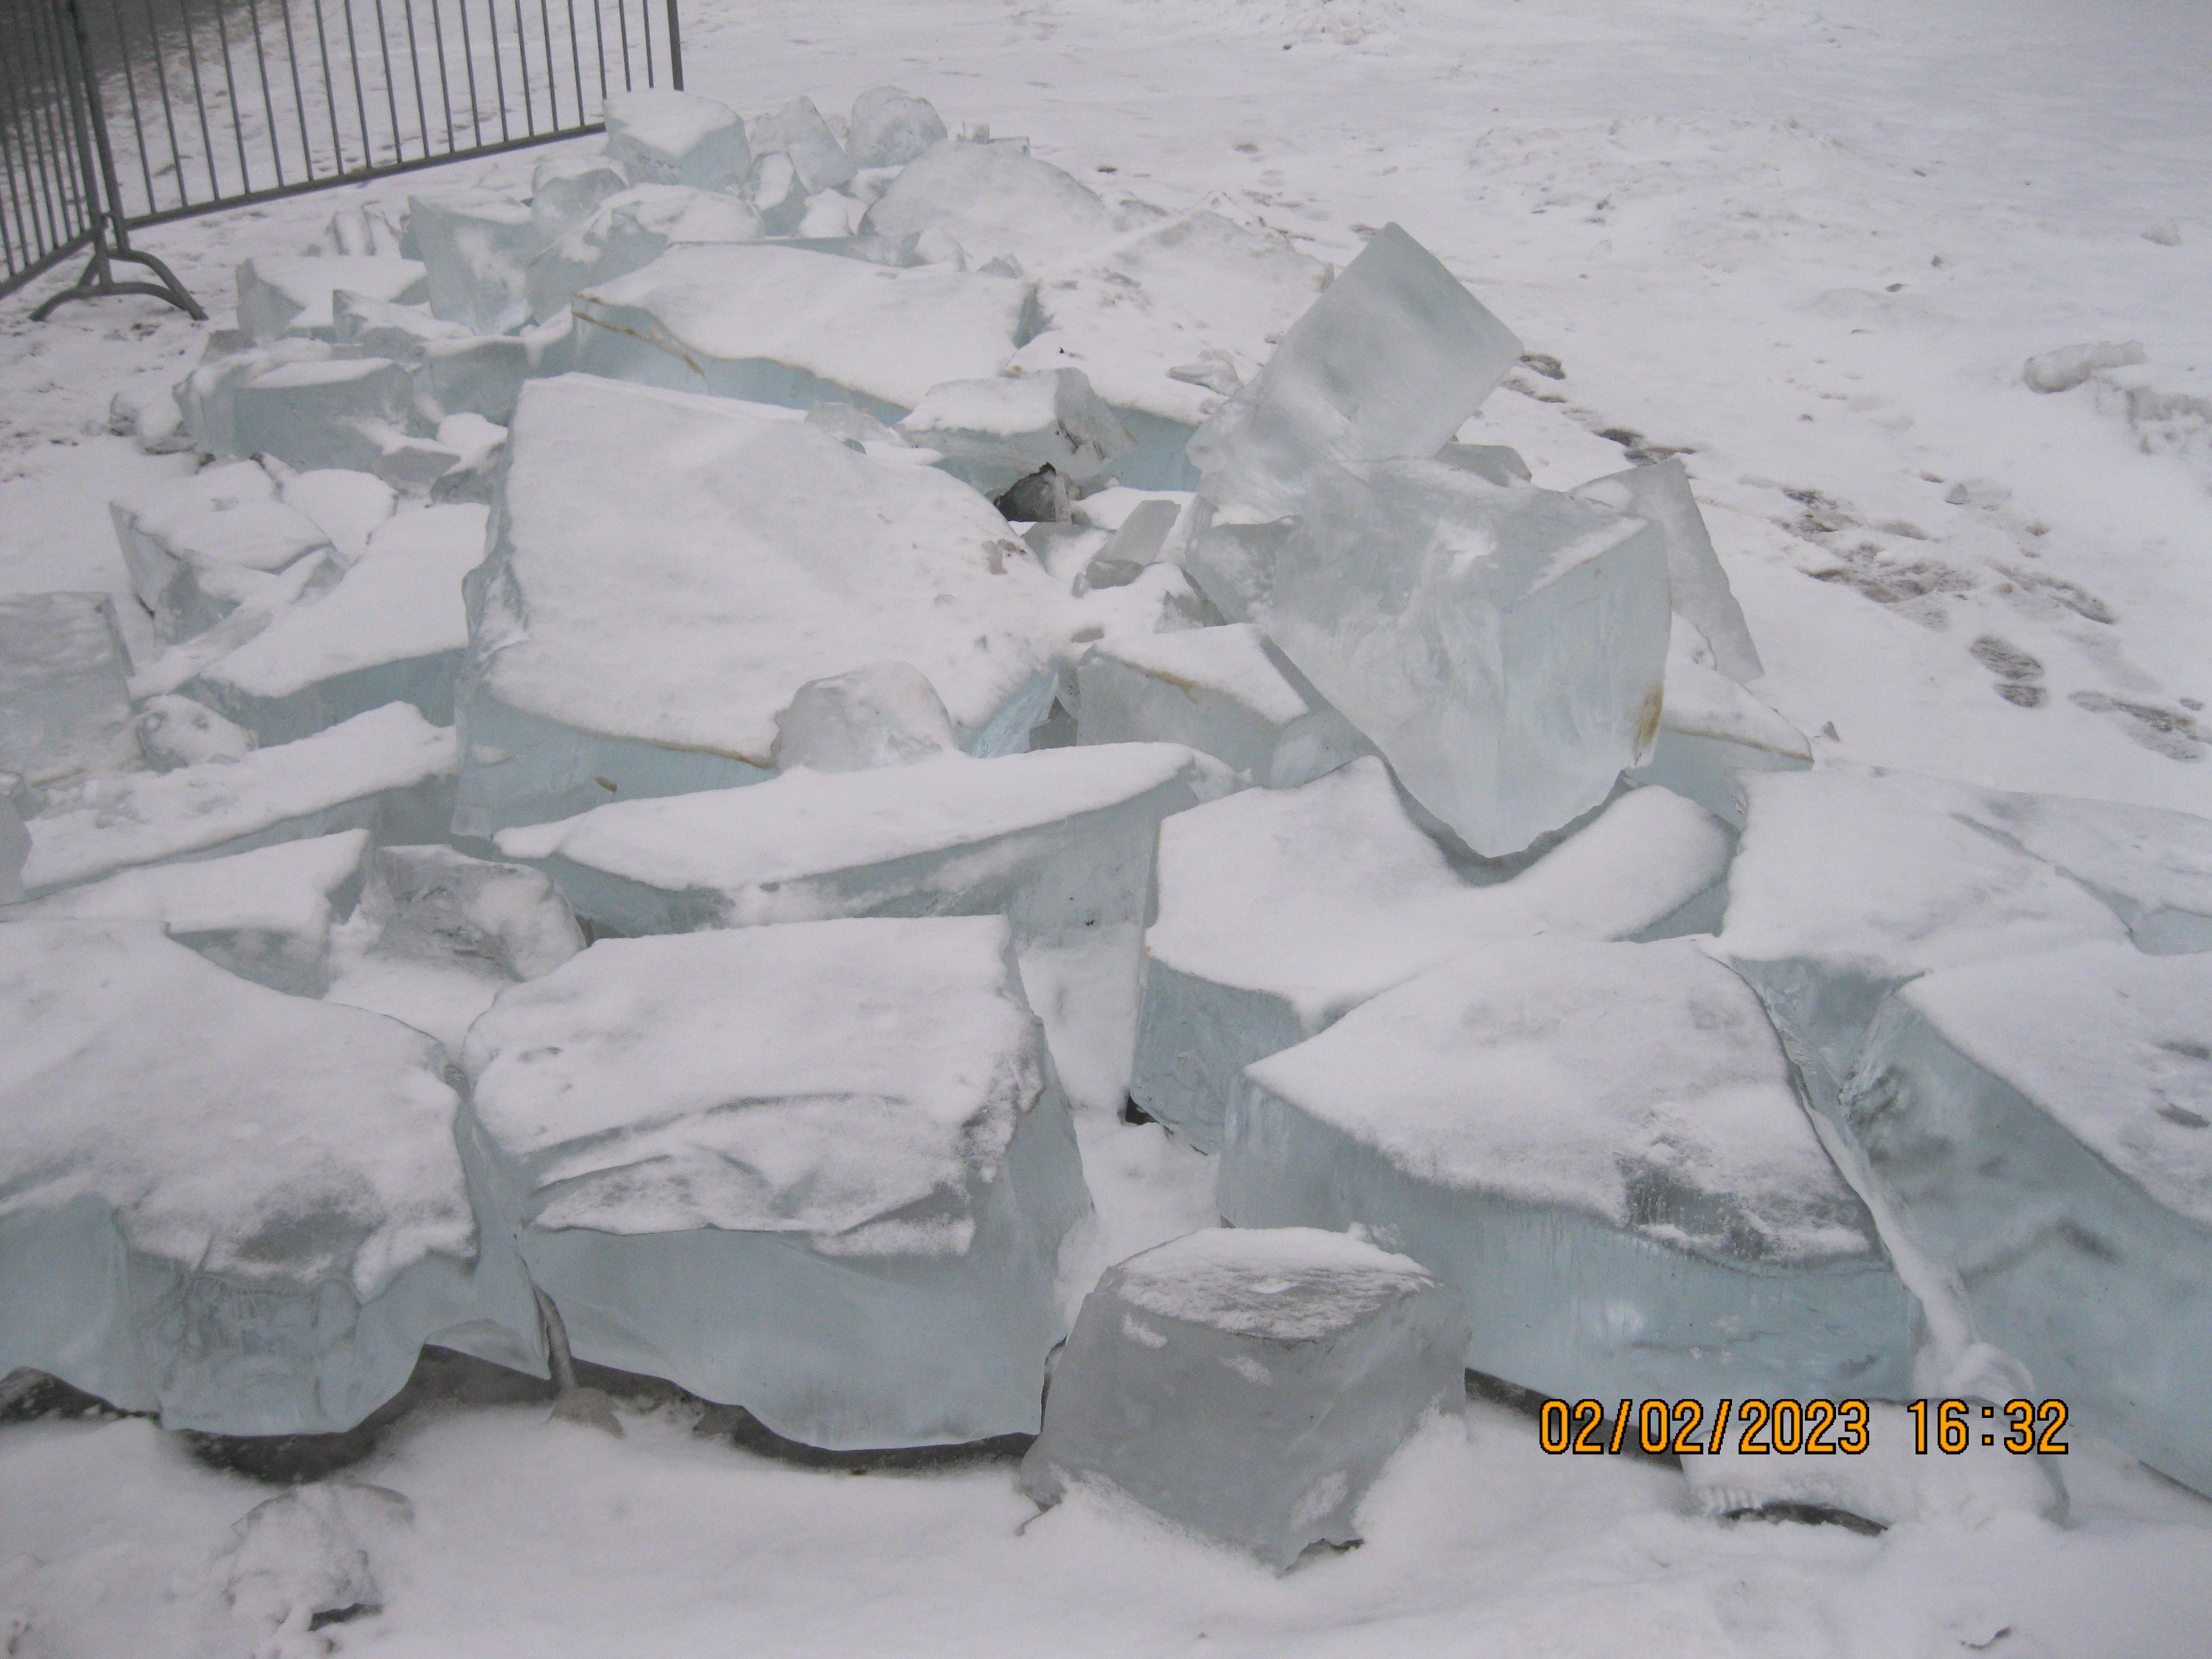 Ледяные скульптуры сооружённые в московском парке Музеон сломали